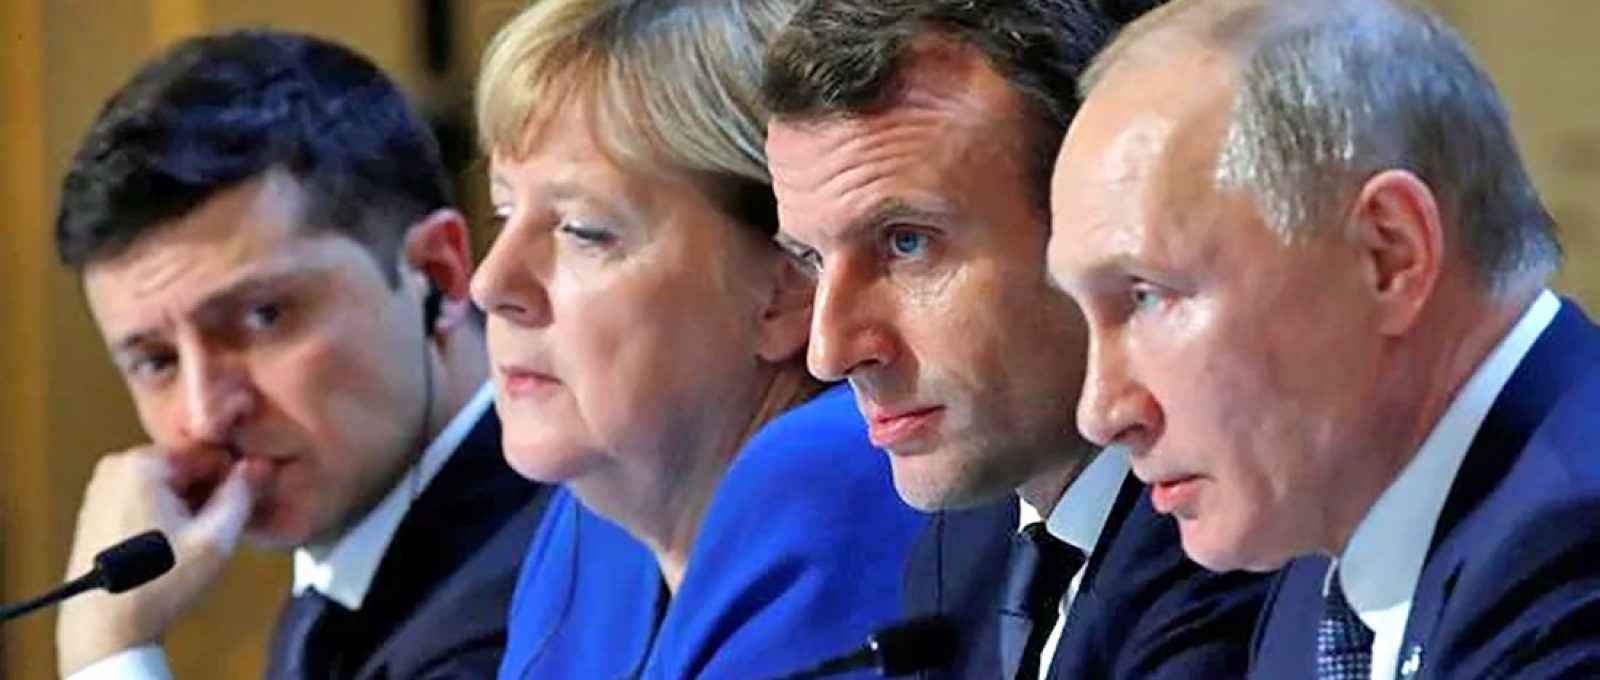 Volodymyr Zelensky, presidente da Ucrânia, Angela Merkel, primeira-ministra da Alemanha, Emmanuel Macron, presidente da França, e Vladimir Putin, presidente da Rússia, em 9 de dezembro de 2019, em Paris, durante negociações do processo de paz no conflito separatista no leste da Ucrânia (C. Platiau/AP).